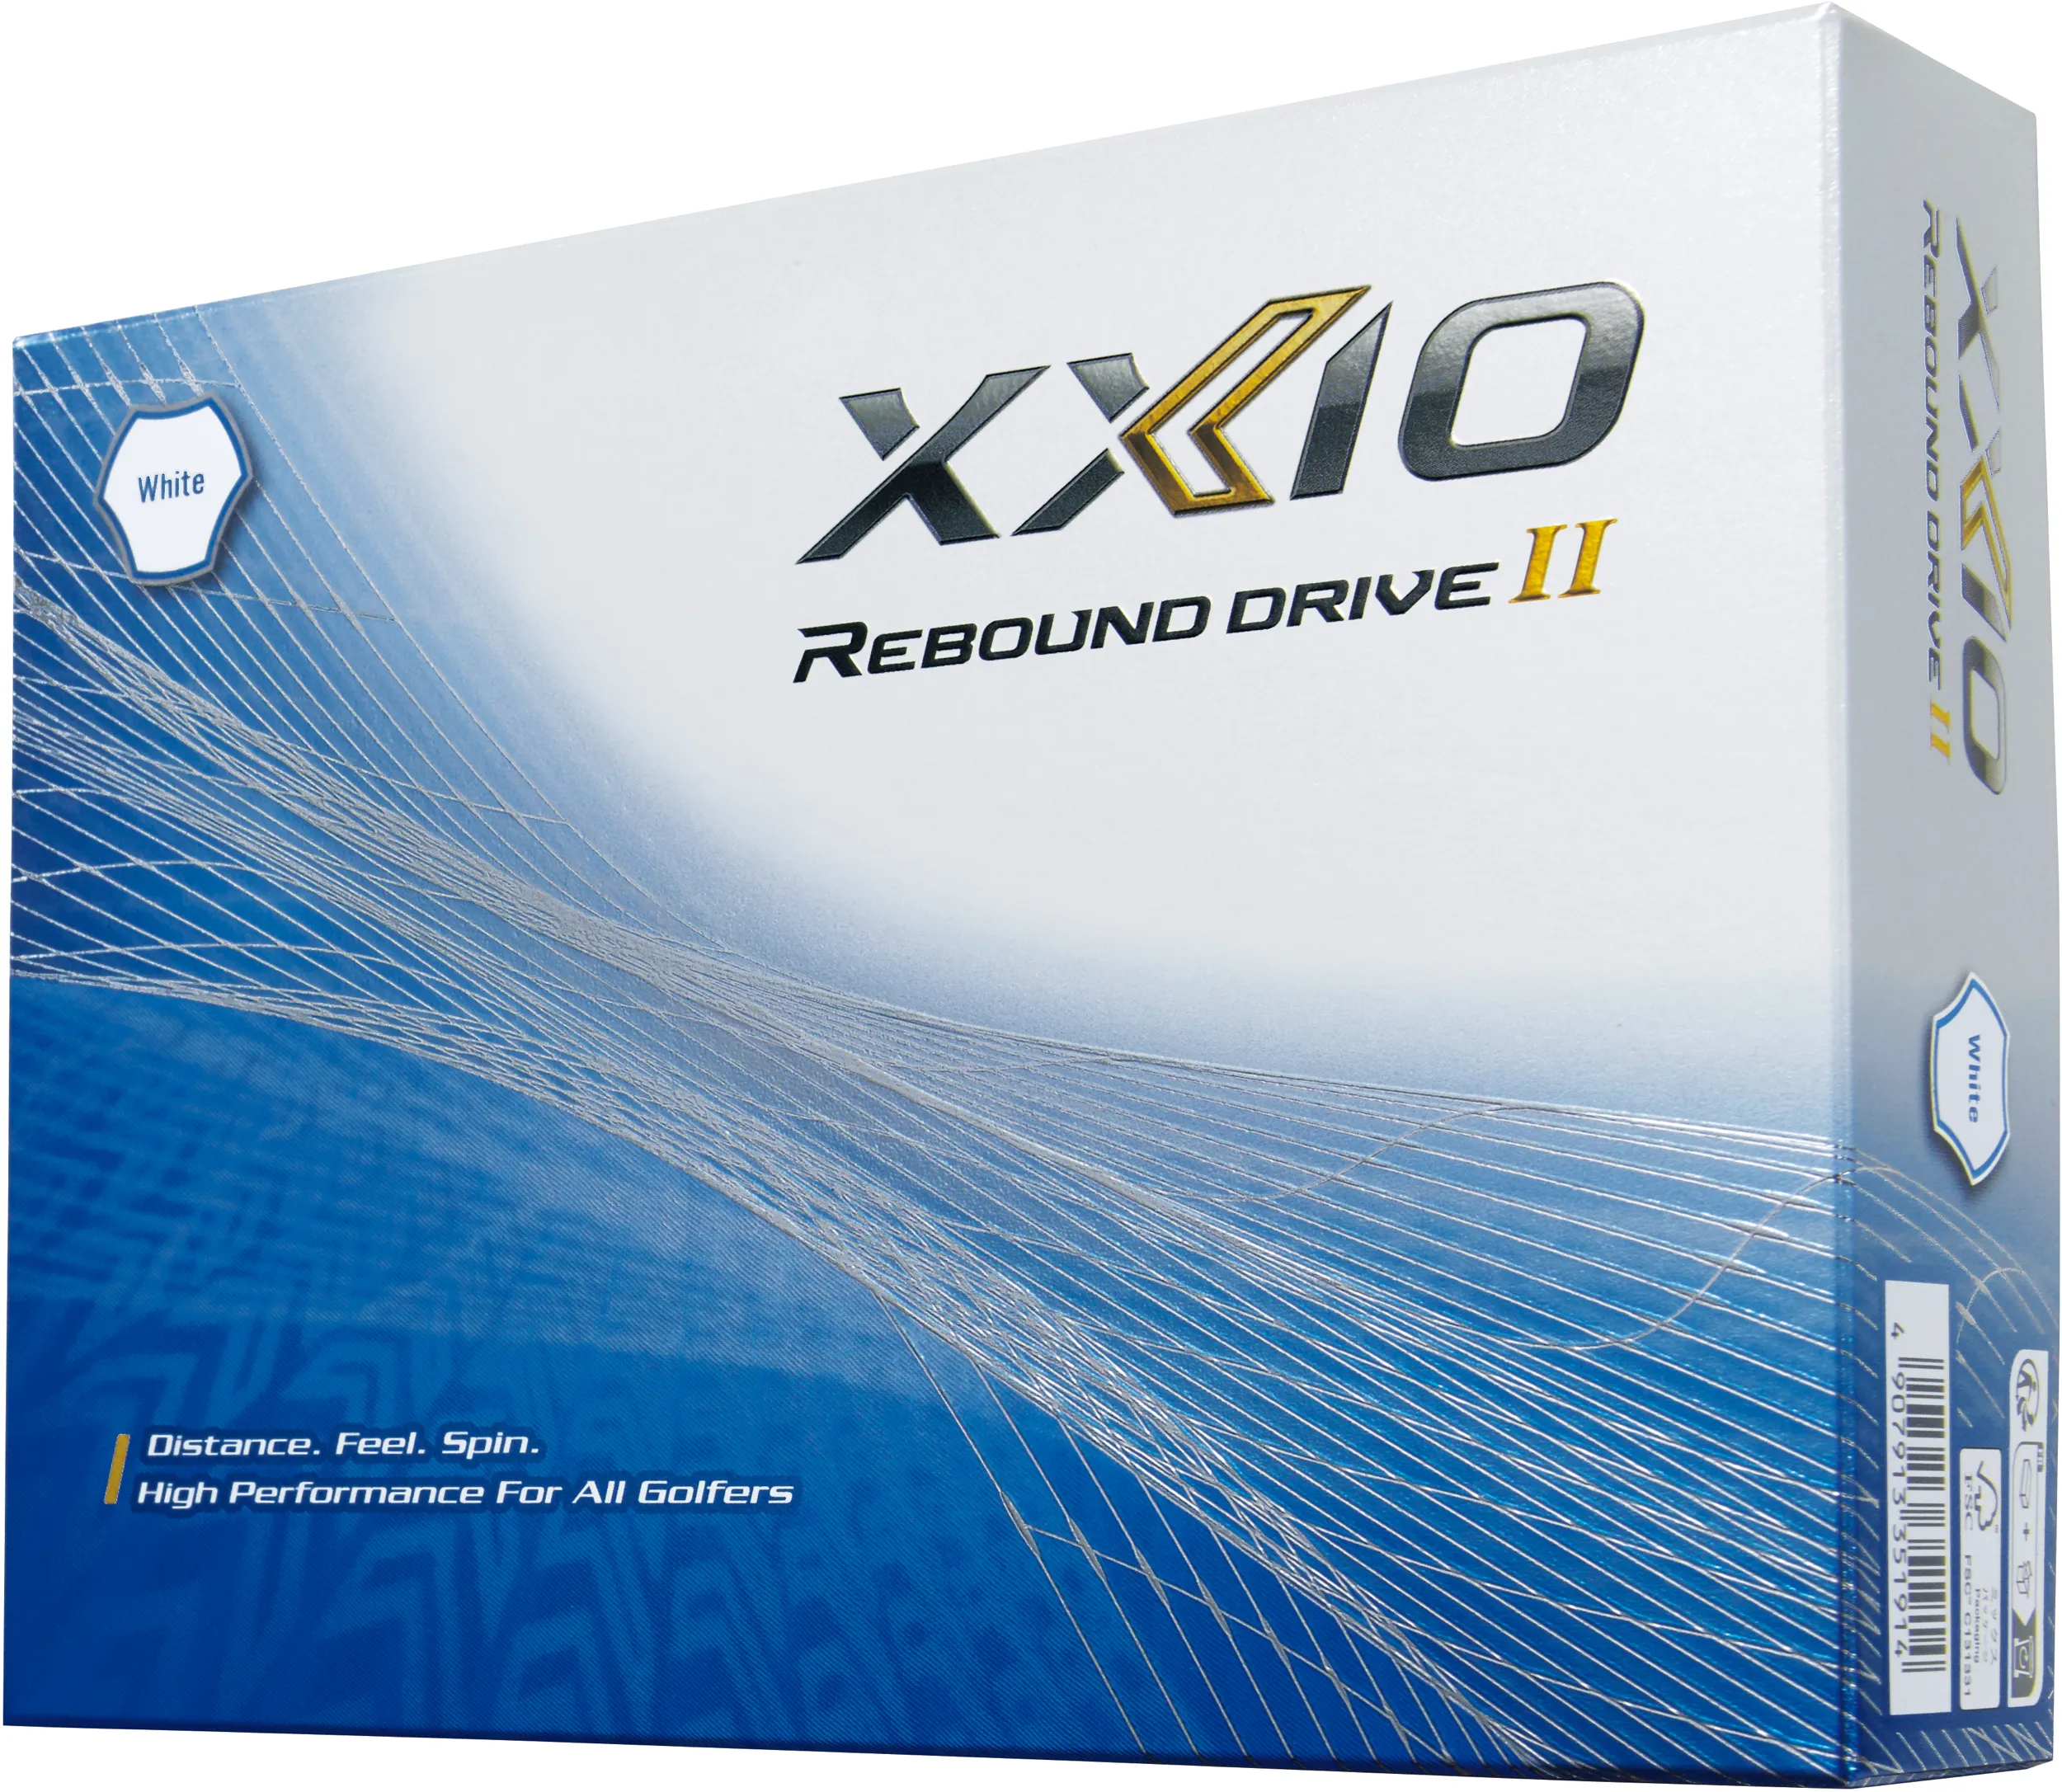 XXIO Rebound Drive II Golfbälle, weiß